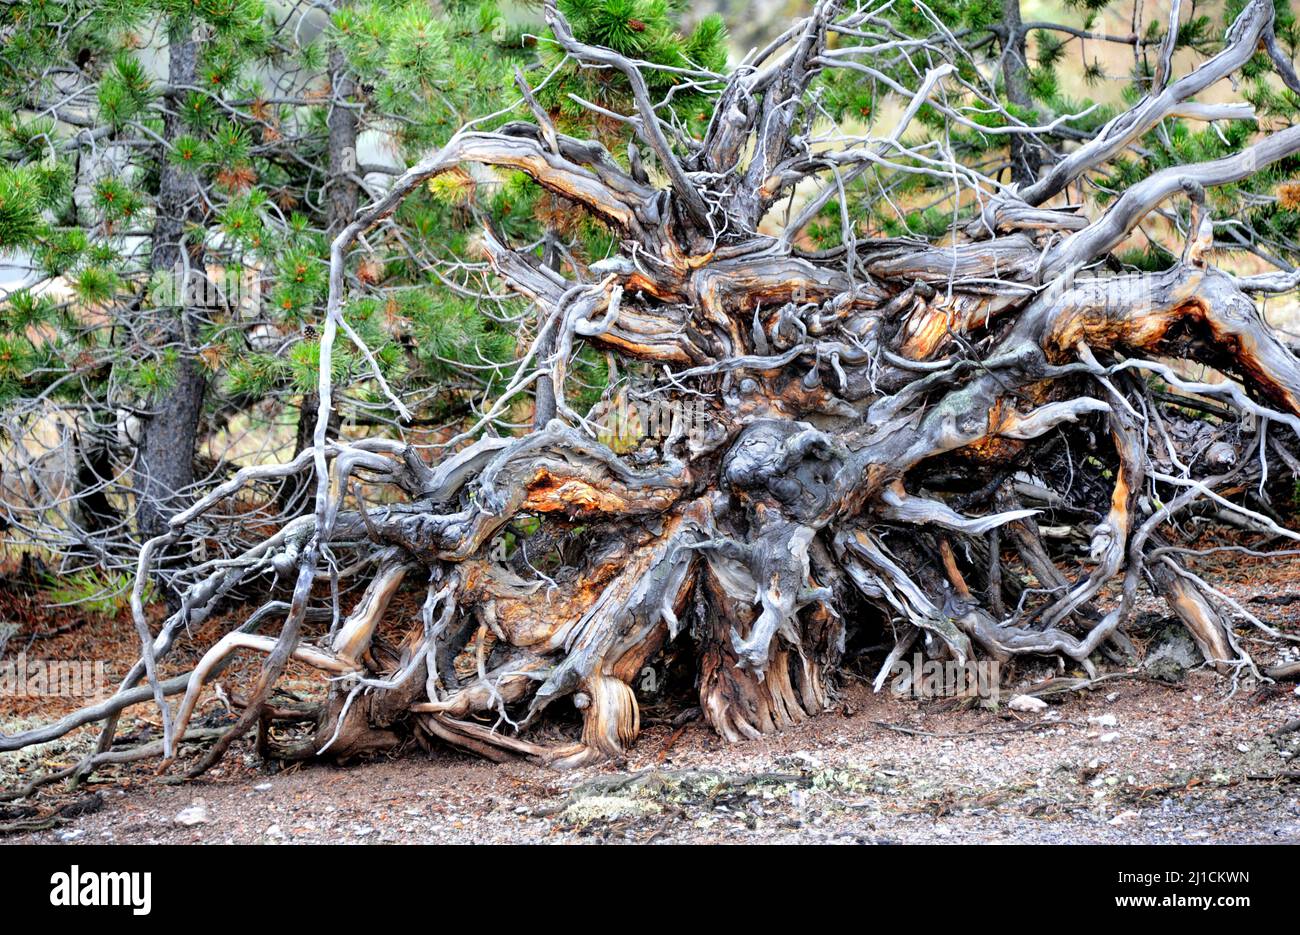 Das große Wurzelsystem wird enthüllt, nachdem der Sturm diesen großen Baum entwurzelt hatte. Verdrehte und knarrte Wurzeln trocknen und vergehen im Yellowstone National Park. Stockfoto